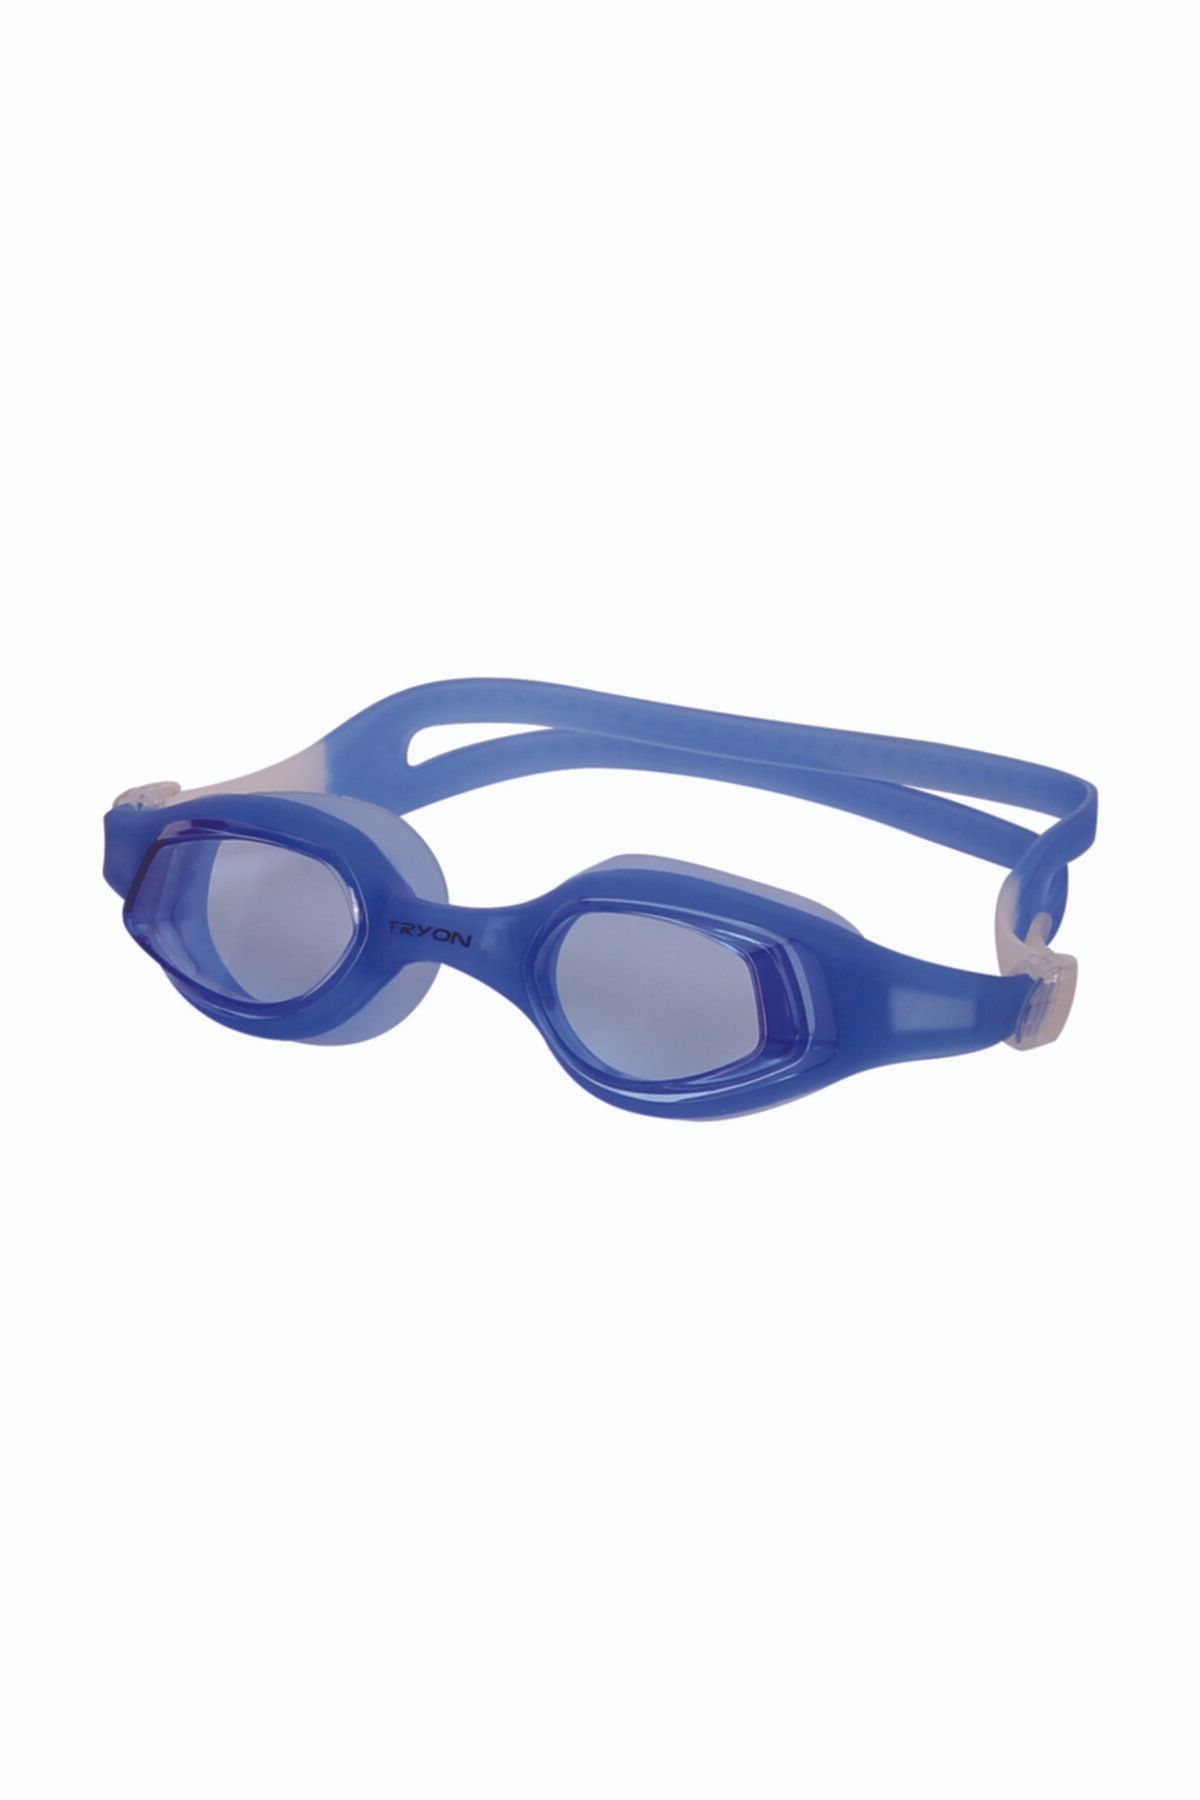 TRYON Yüzücü Gözlüğü Yg400 %8